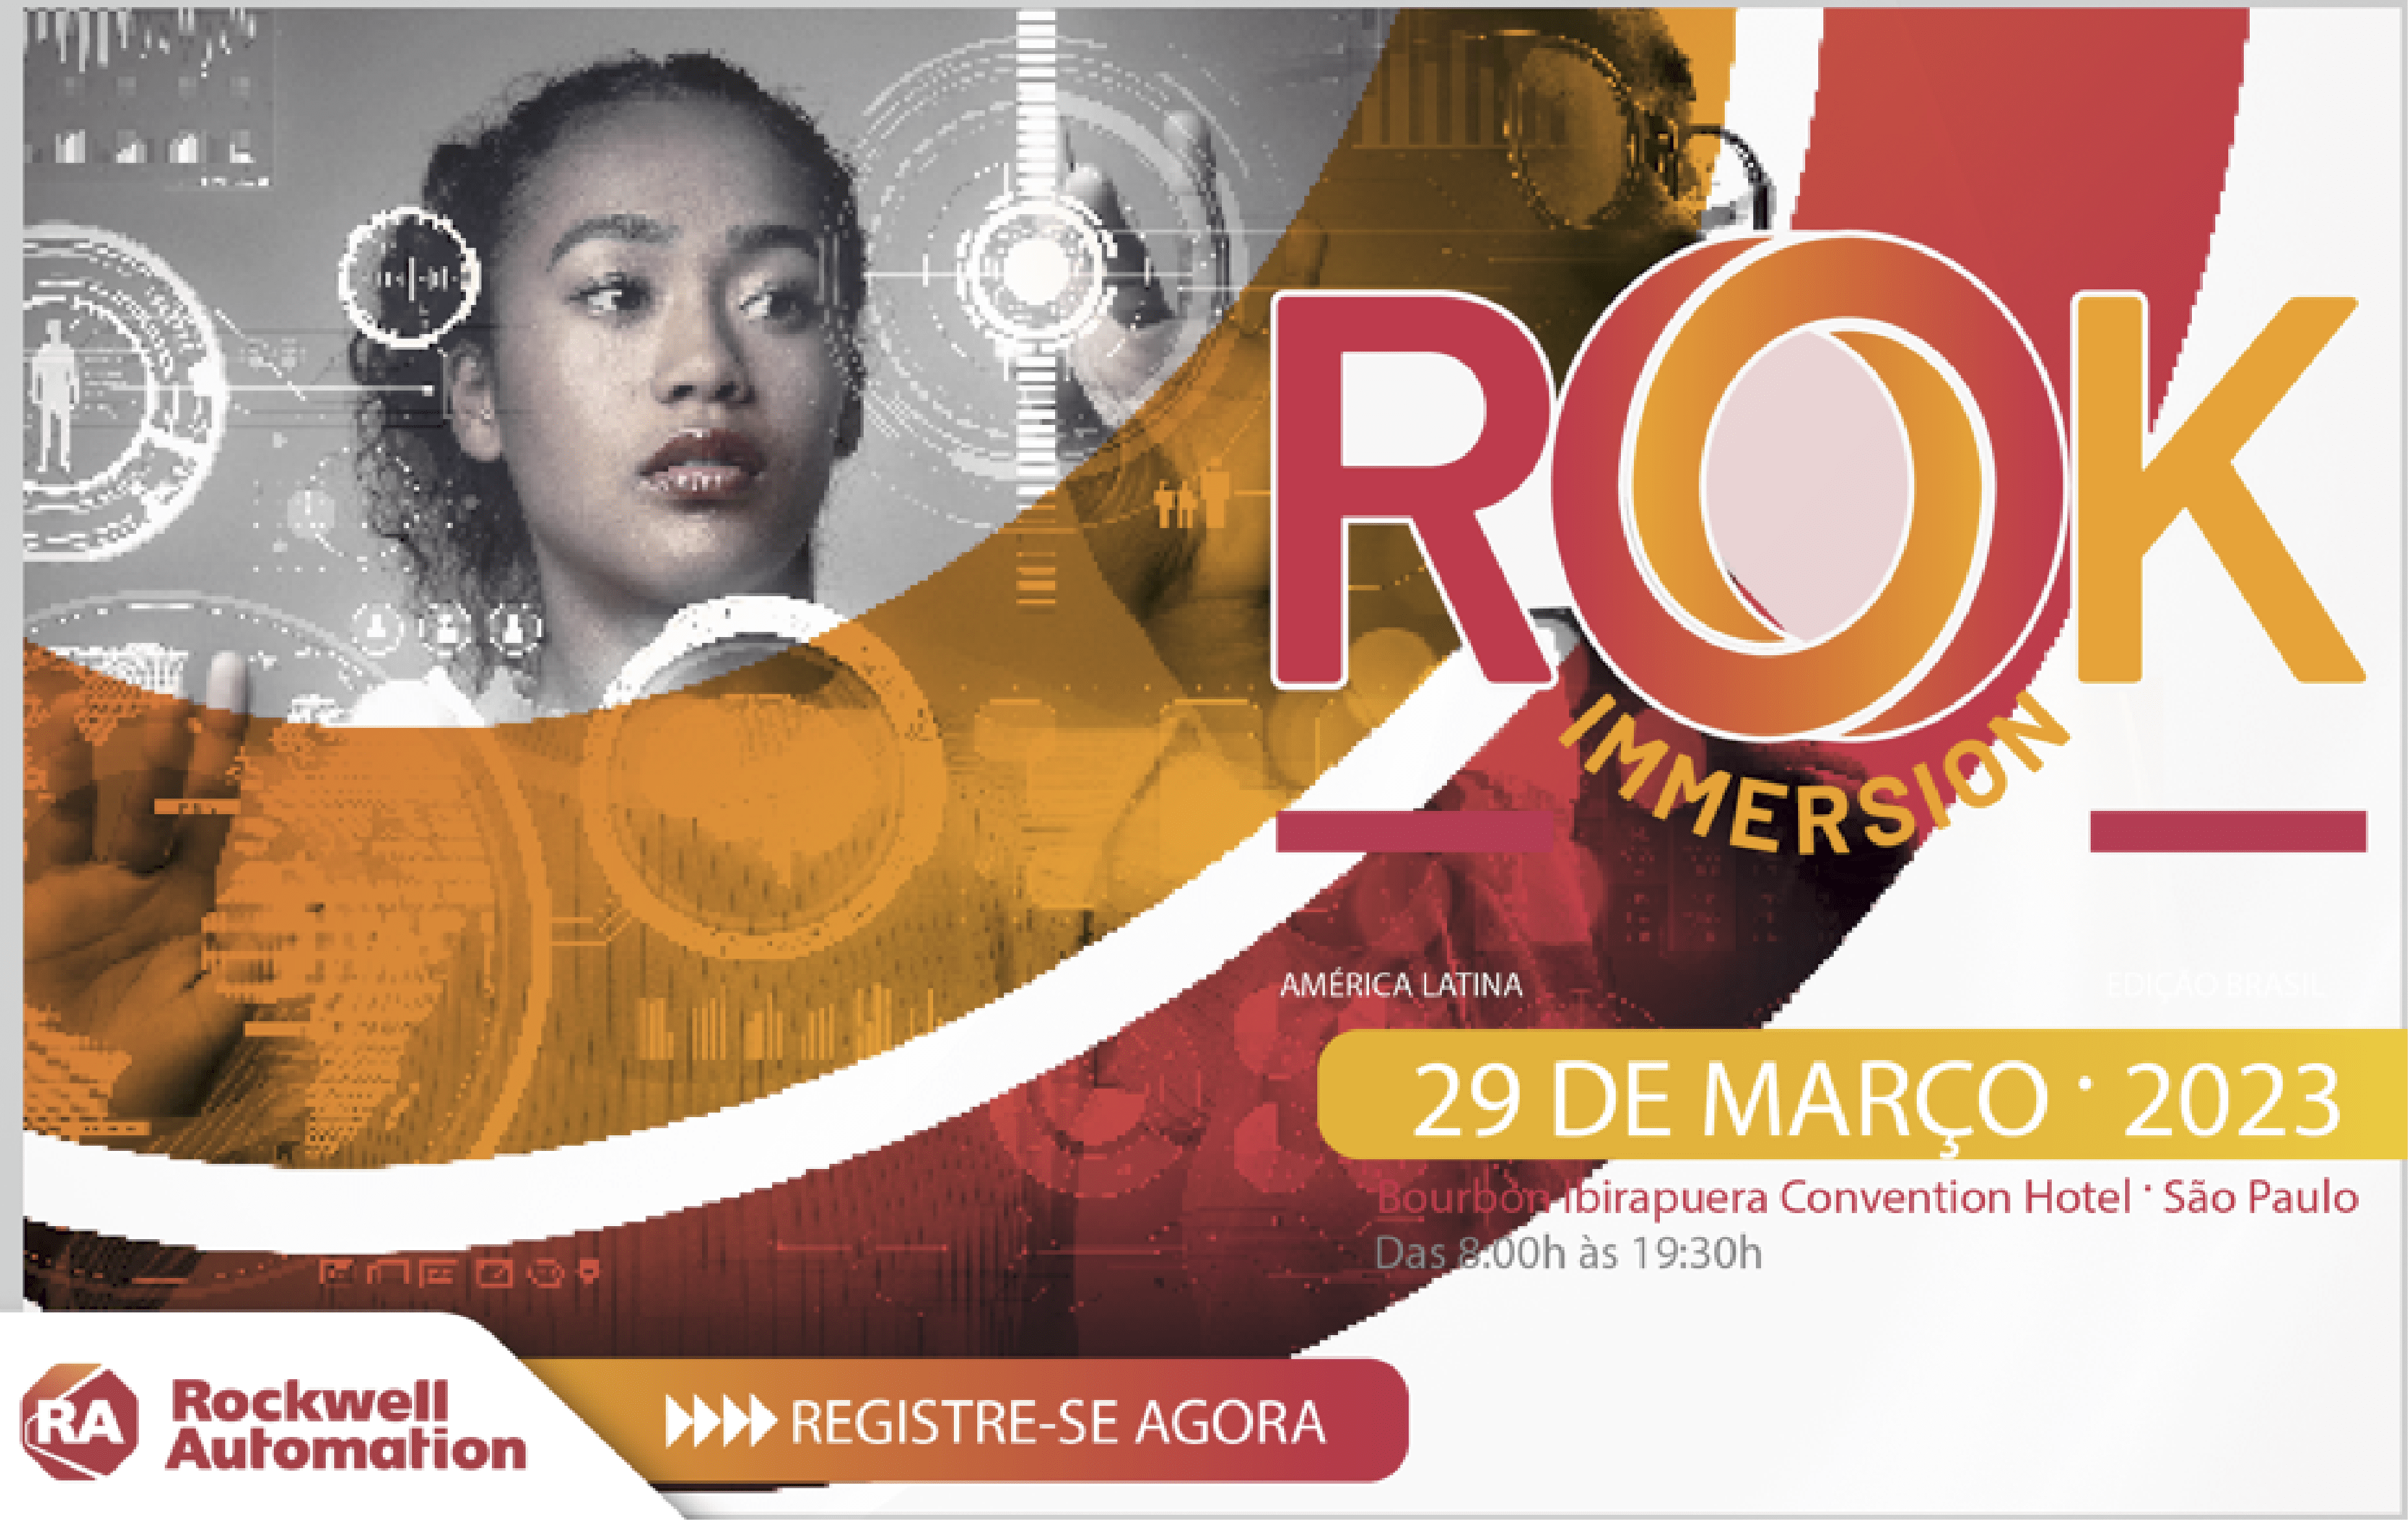 ROK IMMERSION - edição Brasil será no dia 28 de Março de 2023!